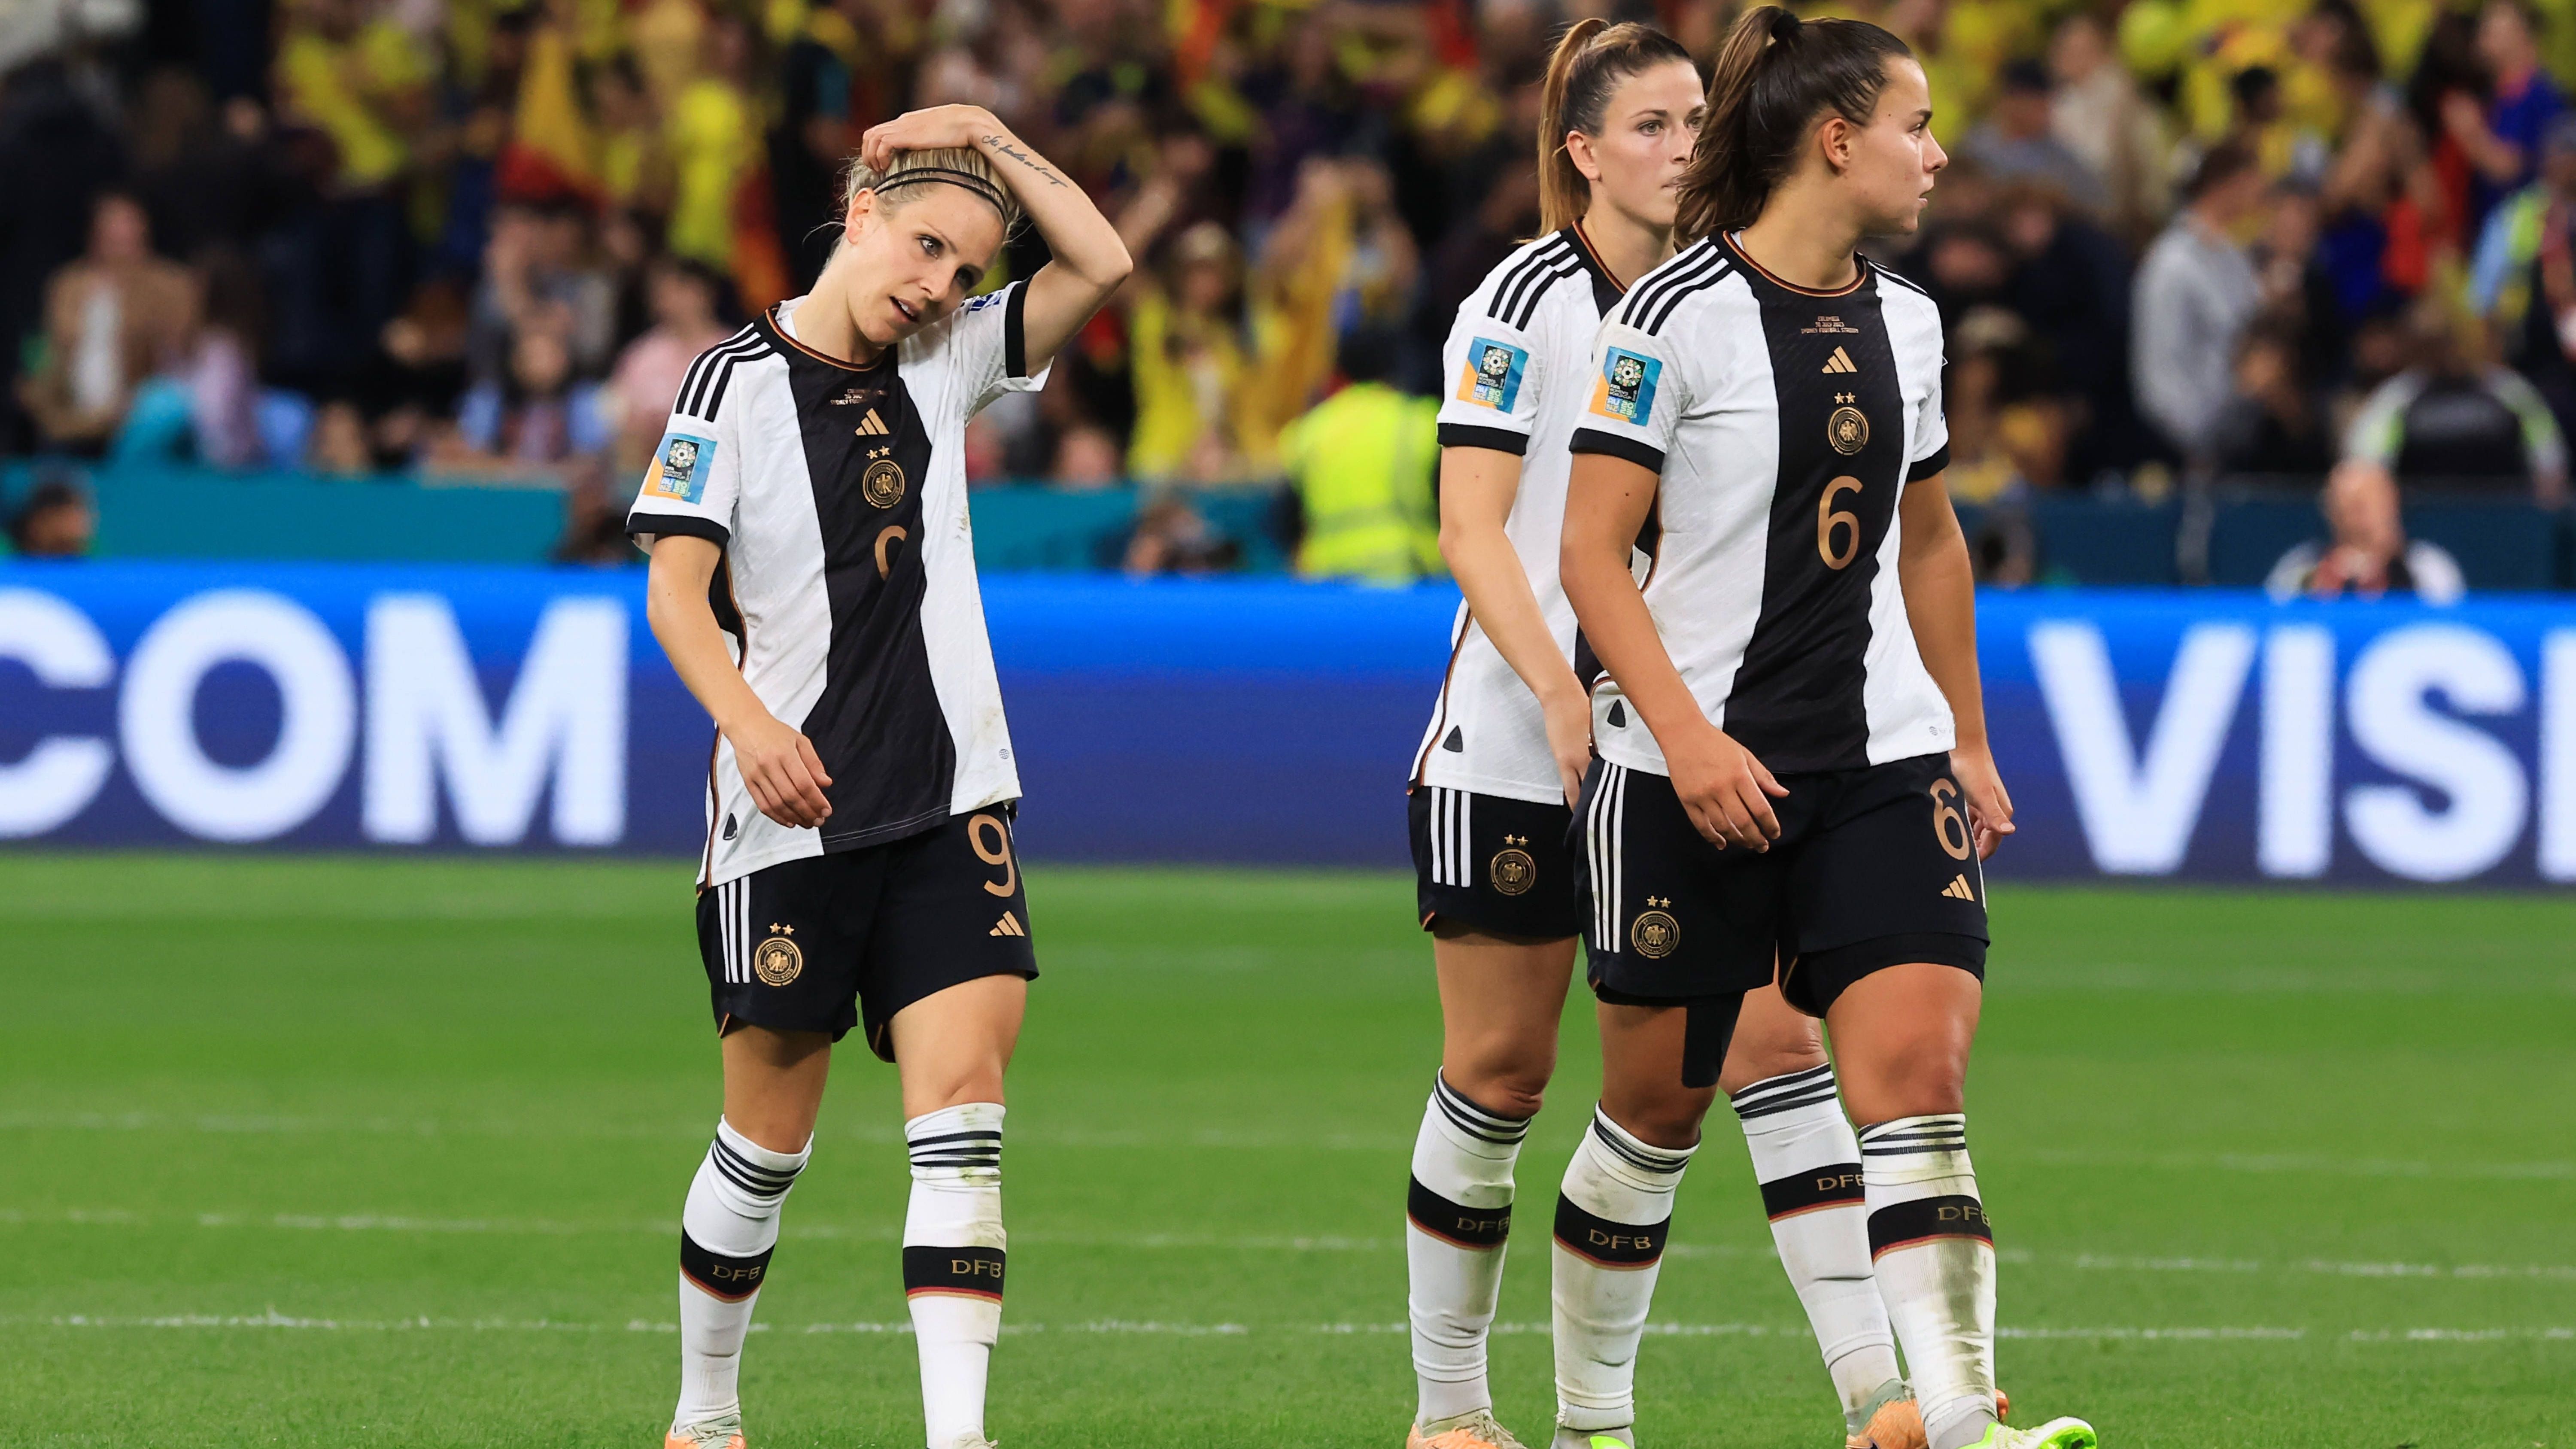 <strong>Verlierer: Deutschland<br></strong>Der Auftakt war fulminant, der weitere Verlauf maximal enttäuschend: Trotz eines 6:0-Siegs gegen Marokko blieb man leistungstechnisch unter seinen Möglichkeiten. Es folgten eine 1:2-Niederlage gegen Kolumbien und schließlich das erste Aus in der Gruppenphase einer WM überhaupt, weil ein 1:1 gegen Südkorea nicht reichte.